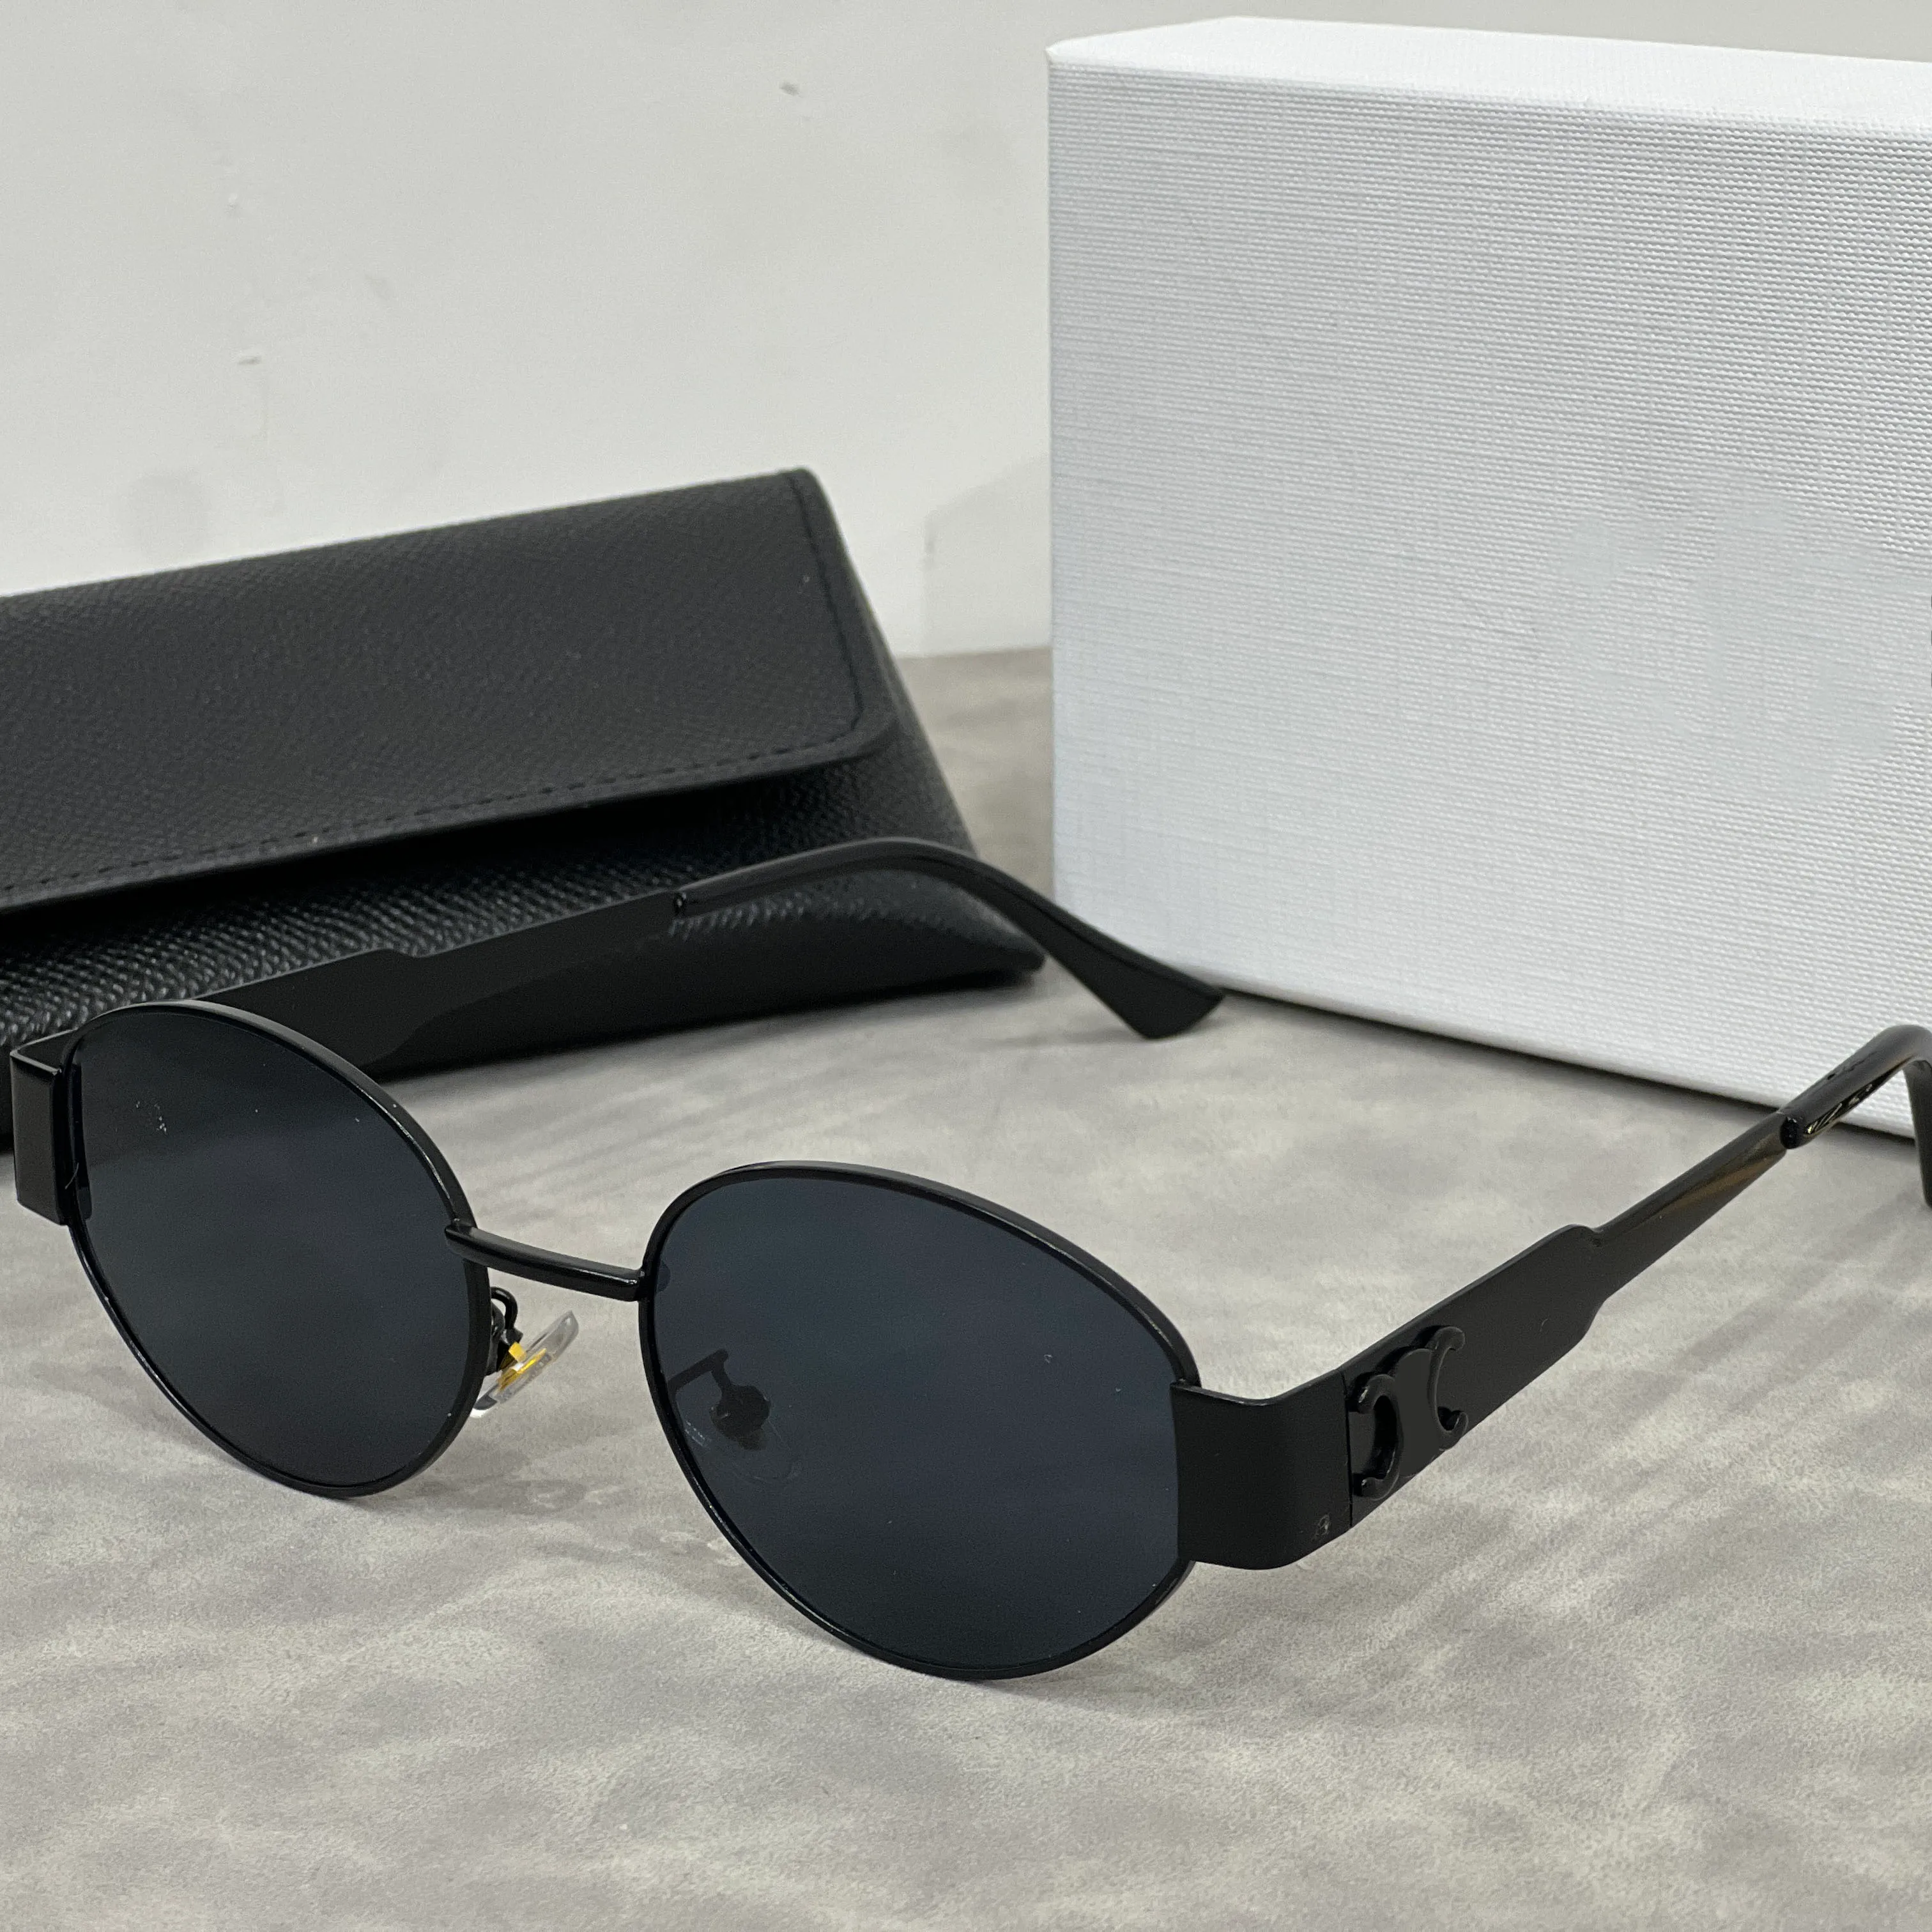 Lüks Tasarımcı Güneş Gözlüğü Erkek Kadın Güneş Gözlüğü Klasik Marka Lüks Güneş Gözlüğü Moda UV400 Gözlük Kutusu Retro Gözlük Seyahat Plaj Fabrikası Mağaza Mağazası